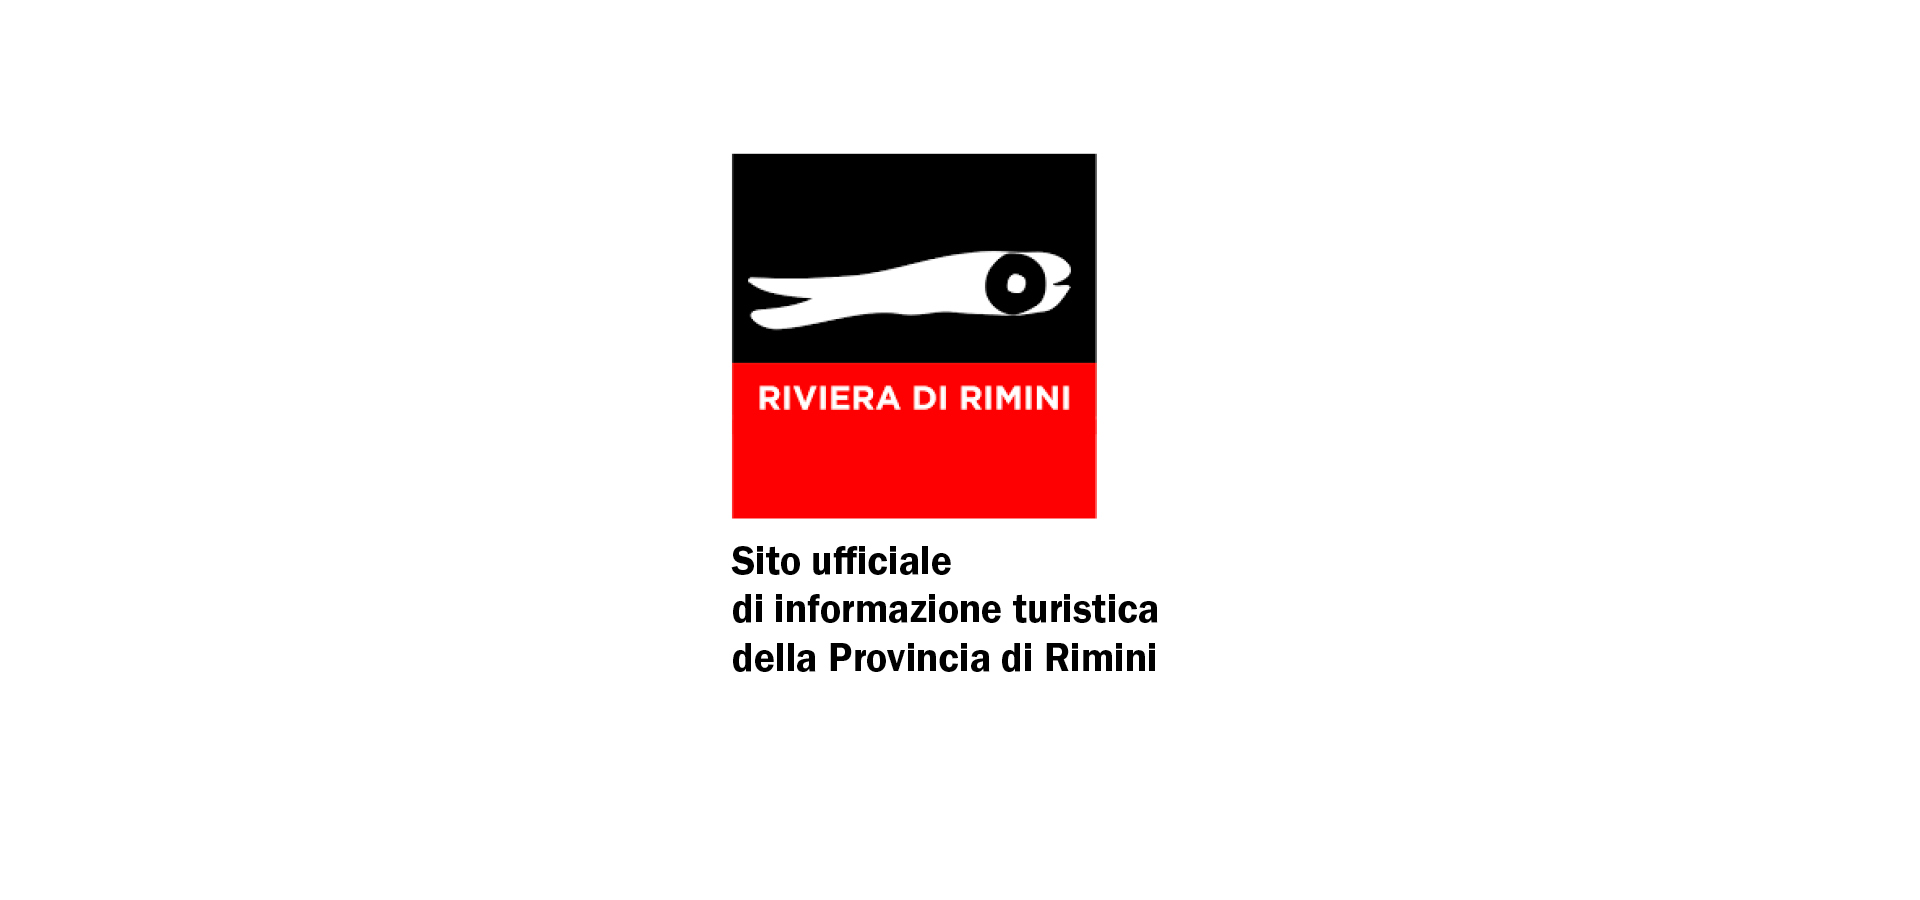 Riviera di Rimini_1920x900_G&M